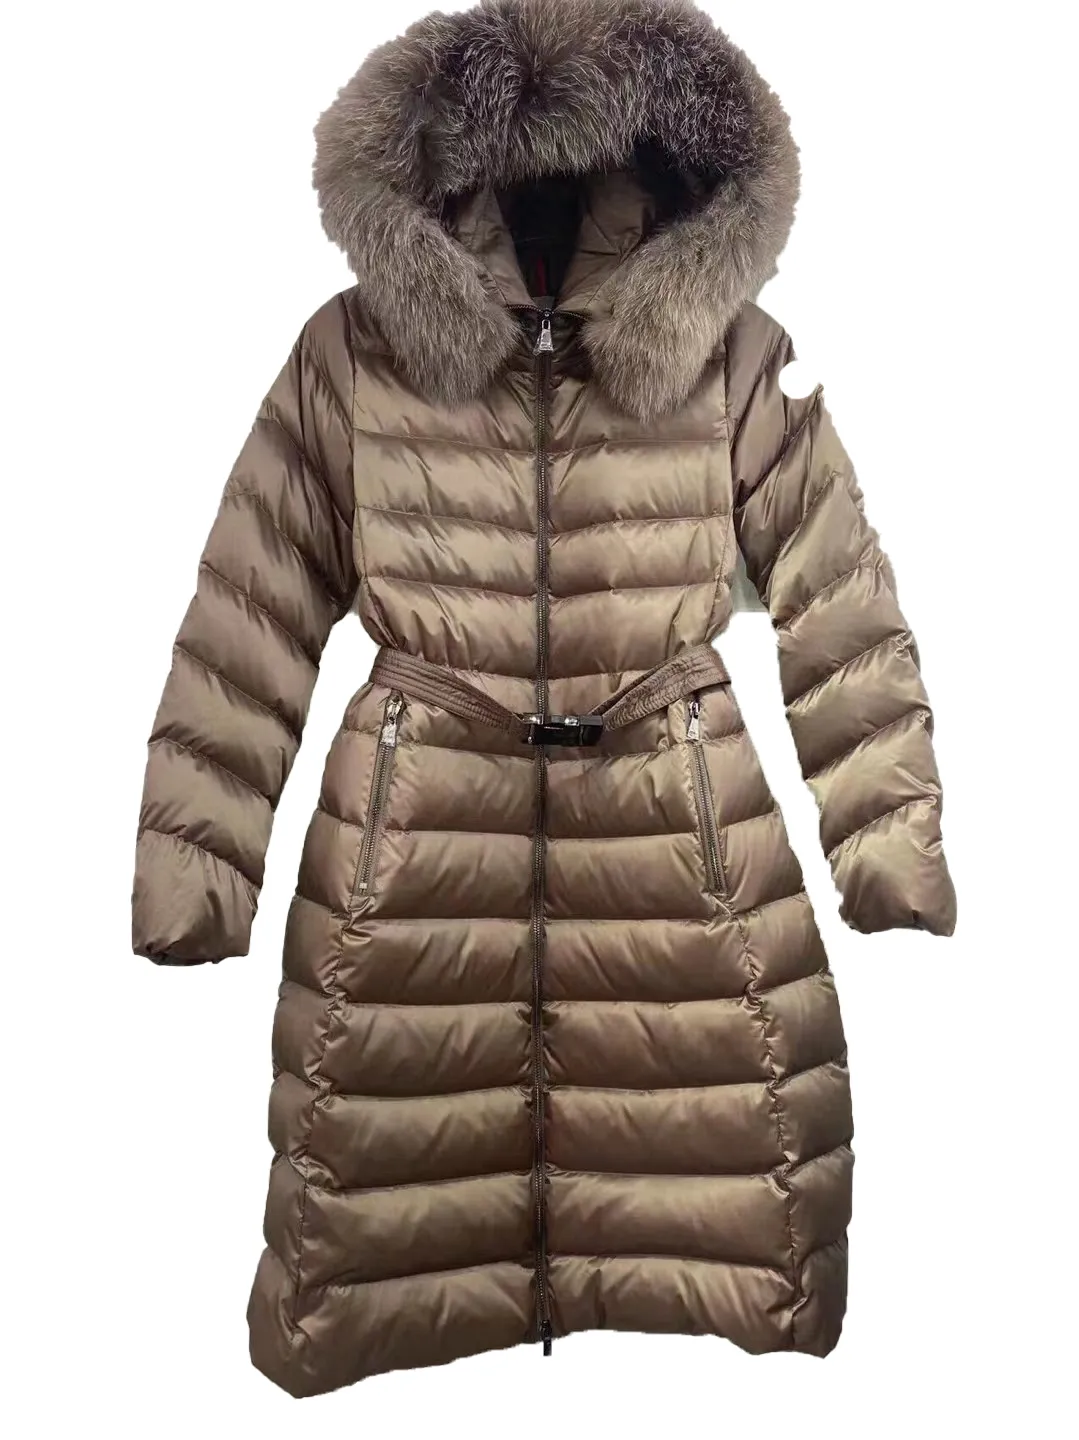 Designerska damska kurtka puchowa haftowana naszywka płaszcz zimowy w pasie ciepły futrzany kołnierz długie damskie zimowe płaszcze